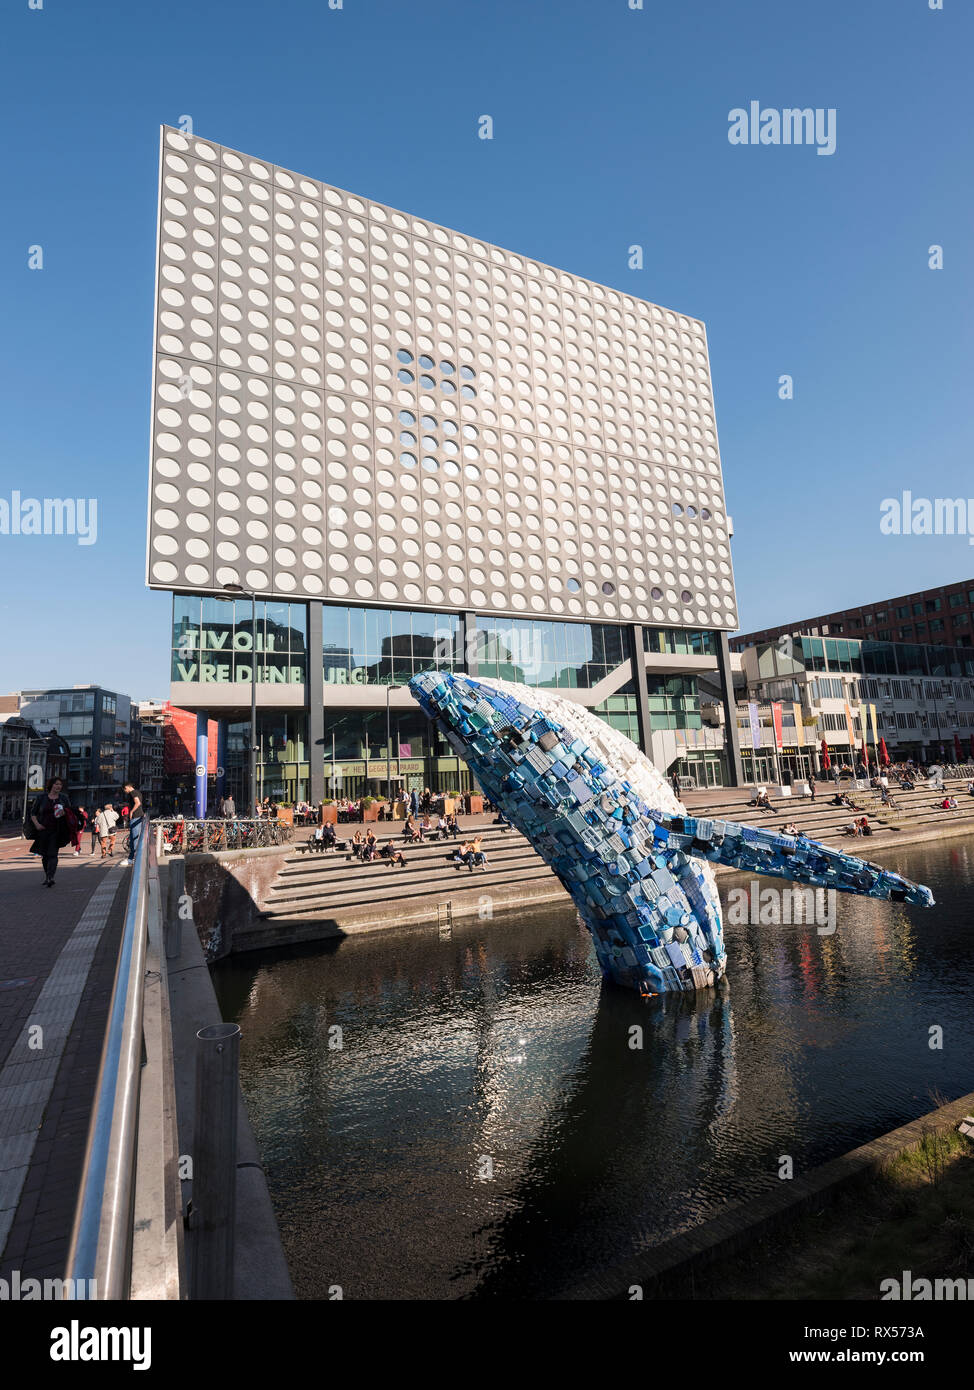 Les concerts de bâtiment moderne à vredenburg tivoli ville néerlandaise d'Utrecht sur journée ensoleillée avec des baleines en plastique construit par StudioKCA Banque D'Images